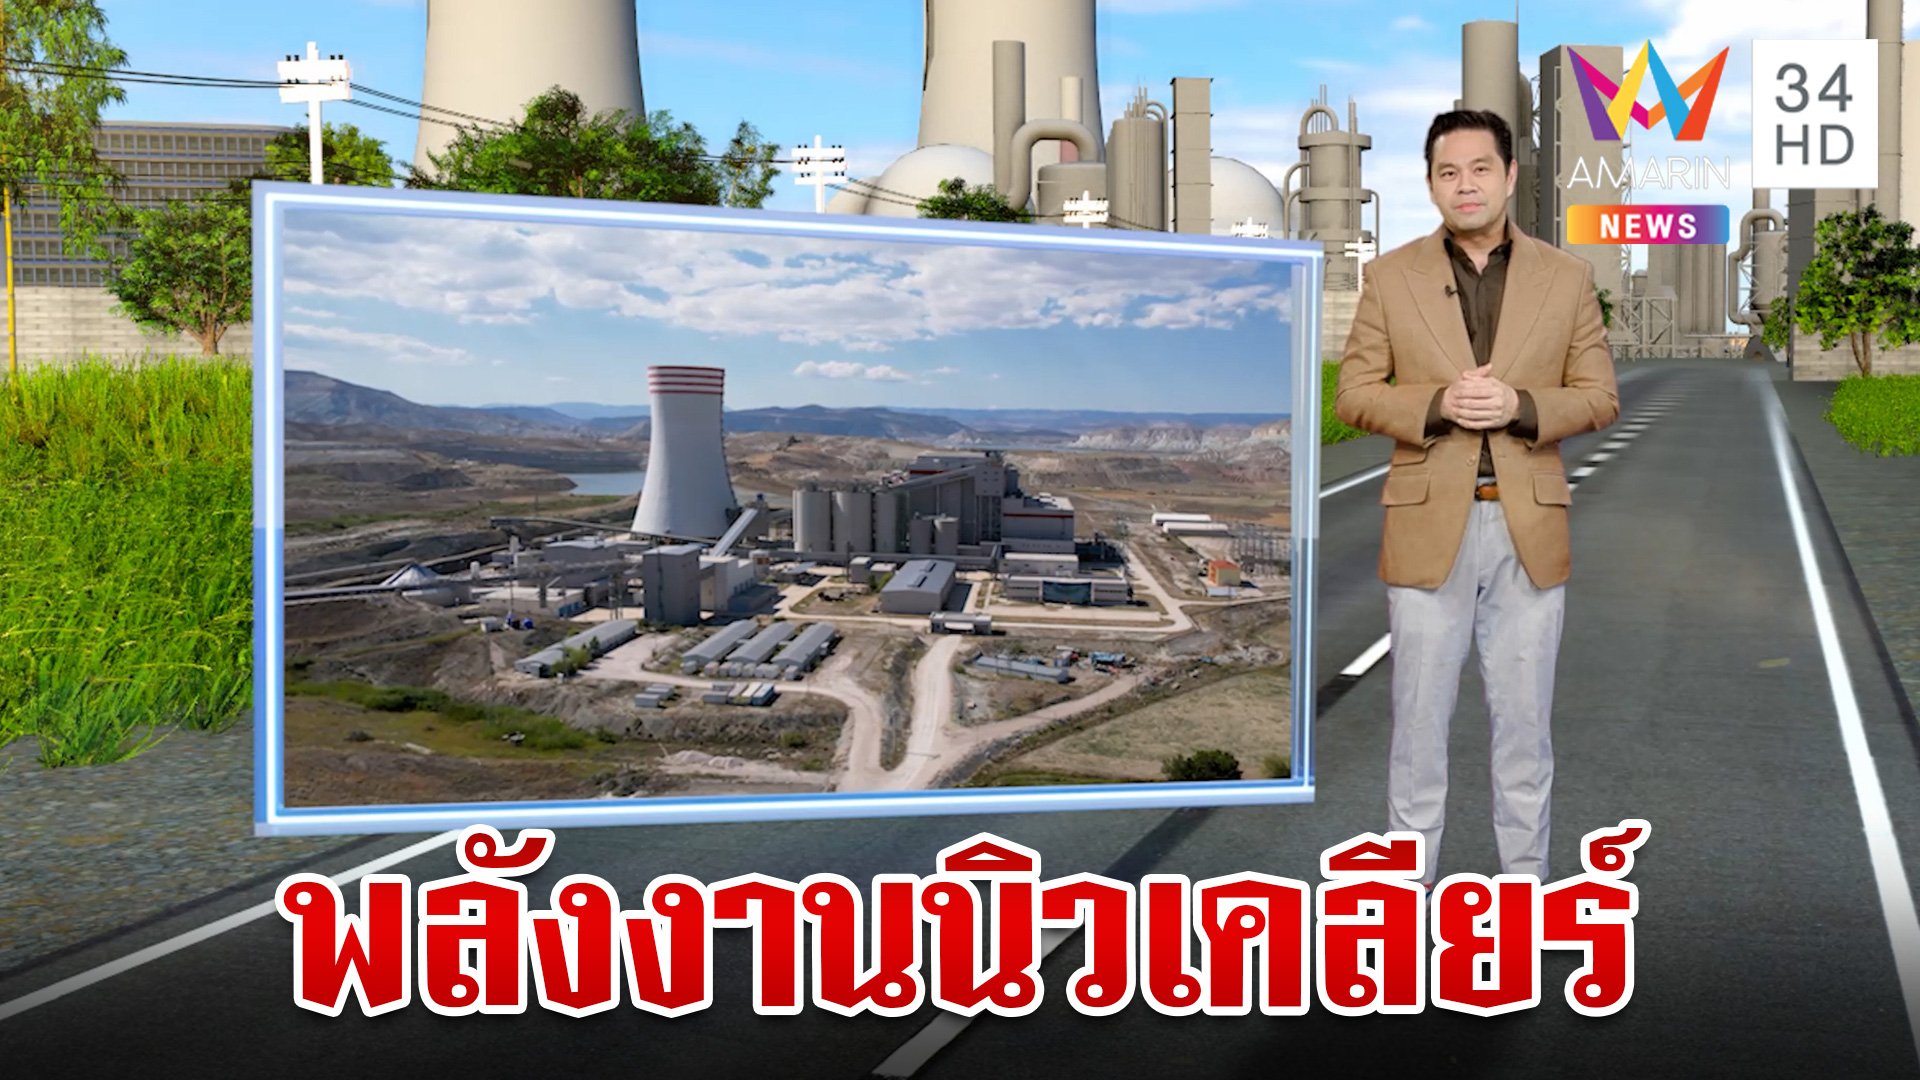 พลังงานนิวเคลียร์คืออะไร มีประโยชน์อย่างไรบ้าง | ทุบโต๊ะข่าว | 8 ส.ค. 66 | AMARIN TVHD34